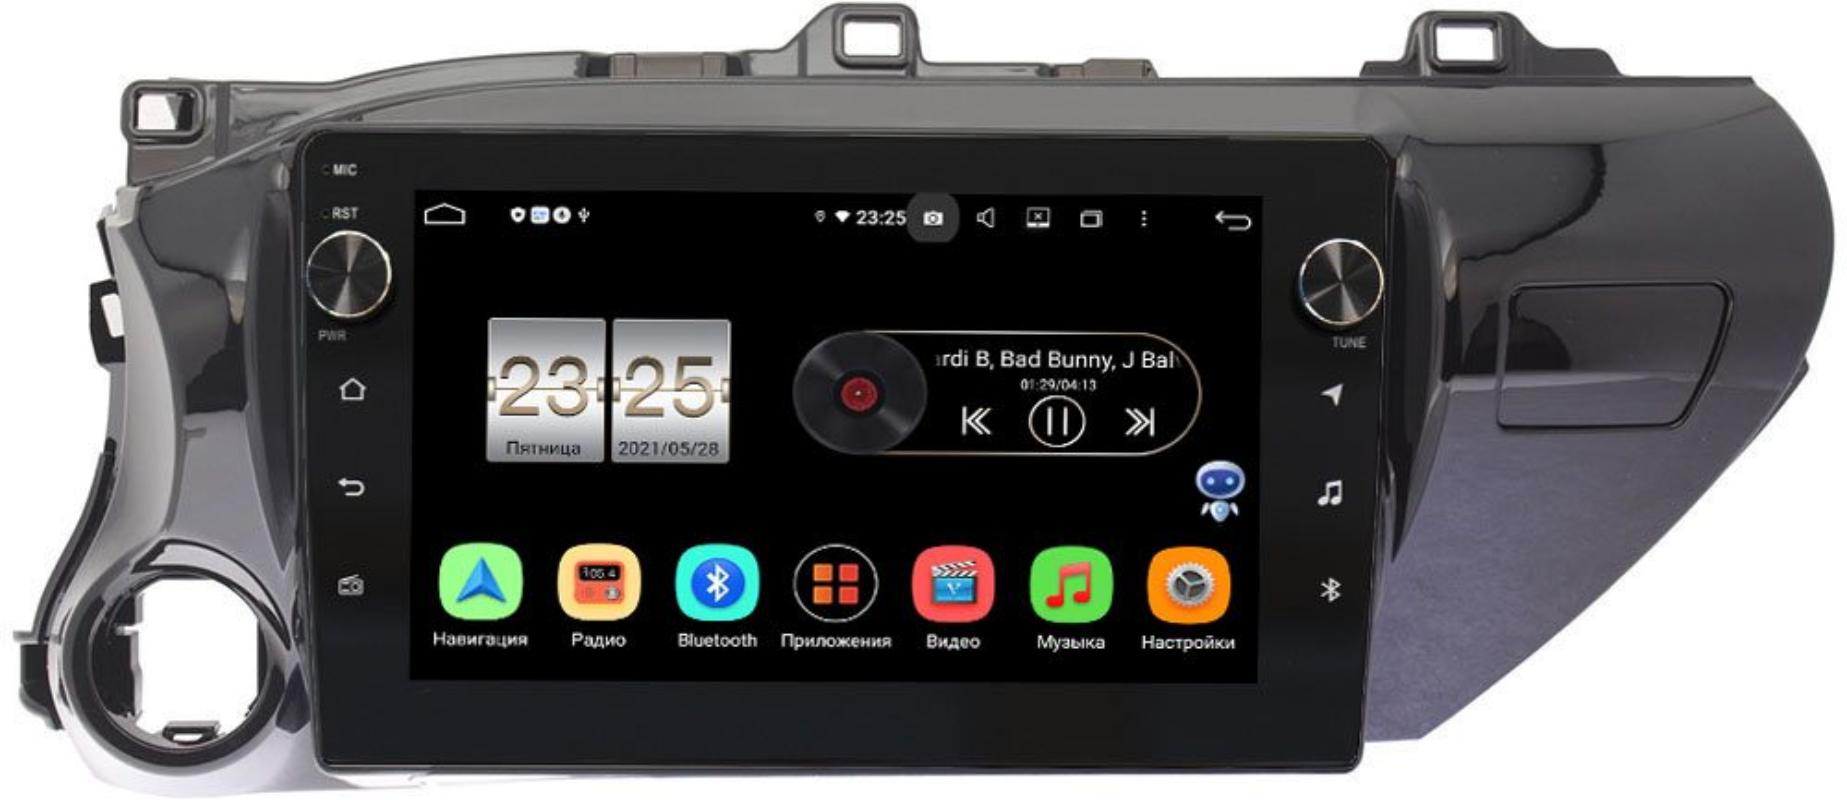 Штатная магнитола Toyota Hilux VIII 2015-2021 LeTrun BPX410-1056 на Android 10 (4/32, DSP, IPS, с голосовым ассистентом, с крутилками) (для любой комплектации) (+ Камера заднего вида в подарок!)